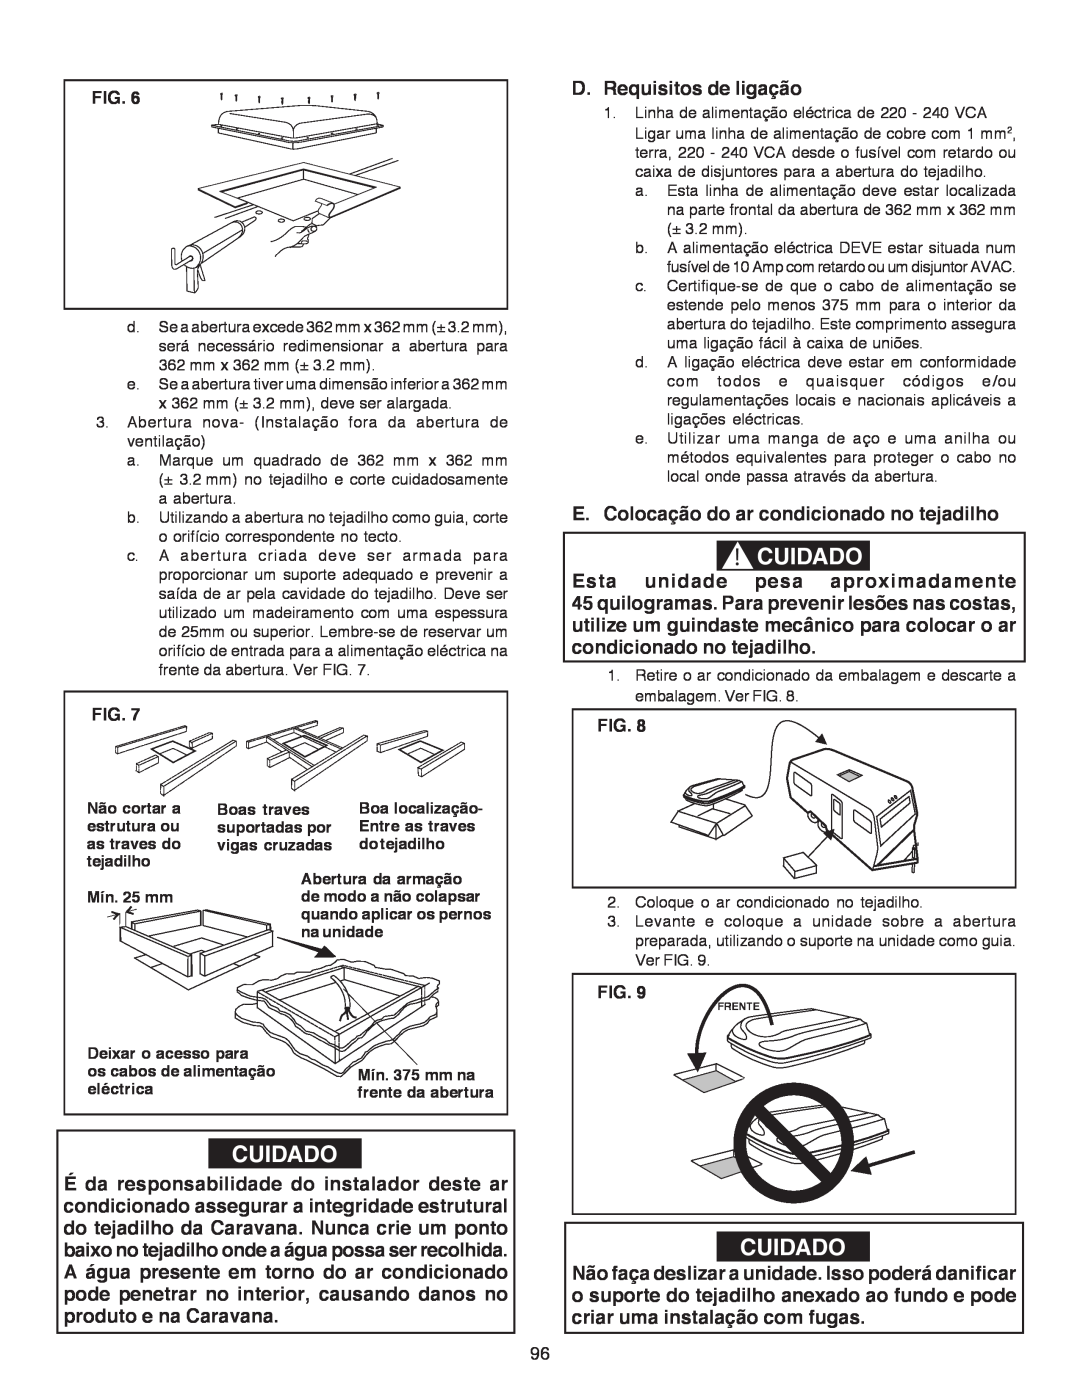 Dometic B3200 manual Cuidado, D.Requisitos de ligação, E.Colocação do ar condicionado no tejadilho 